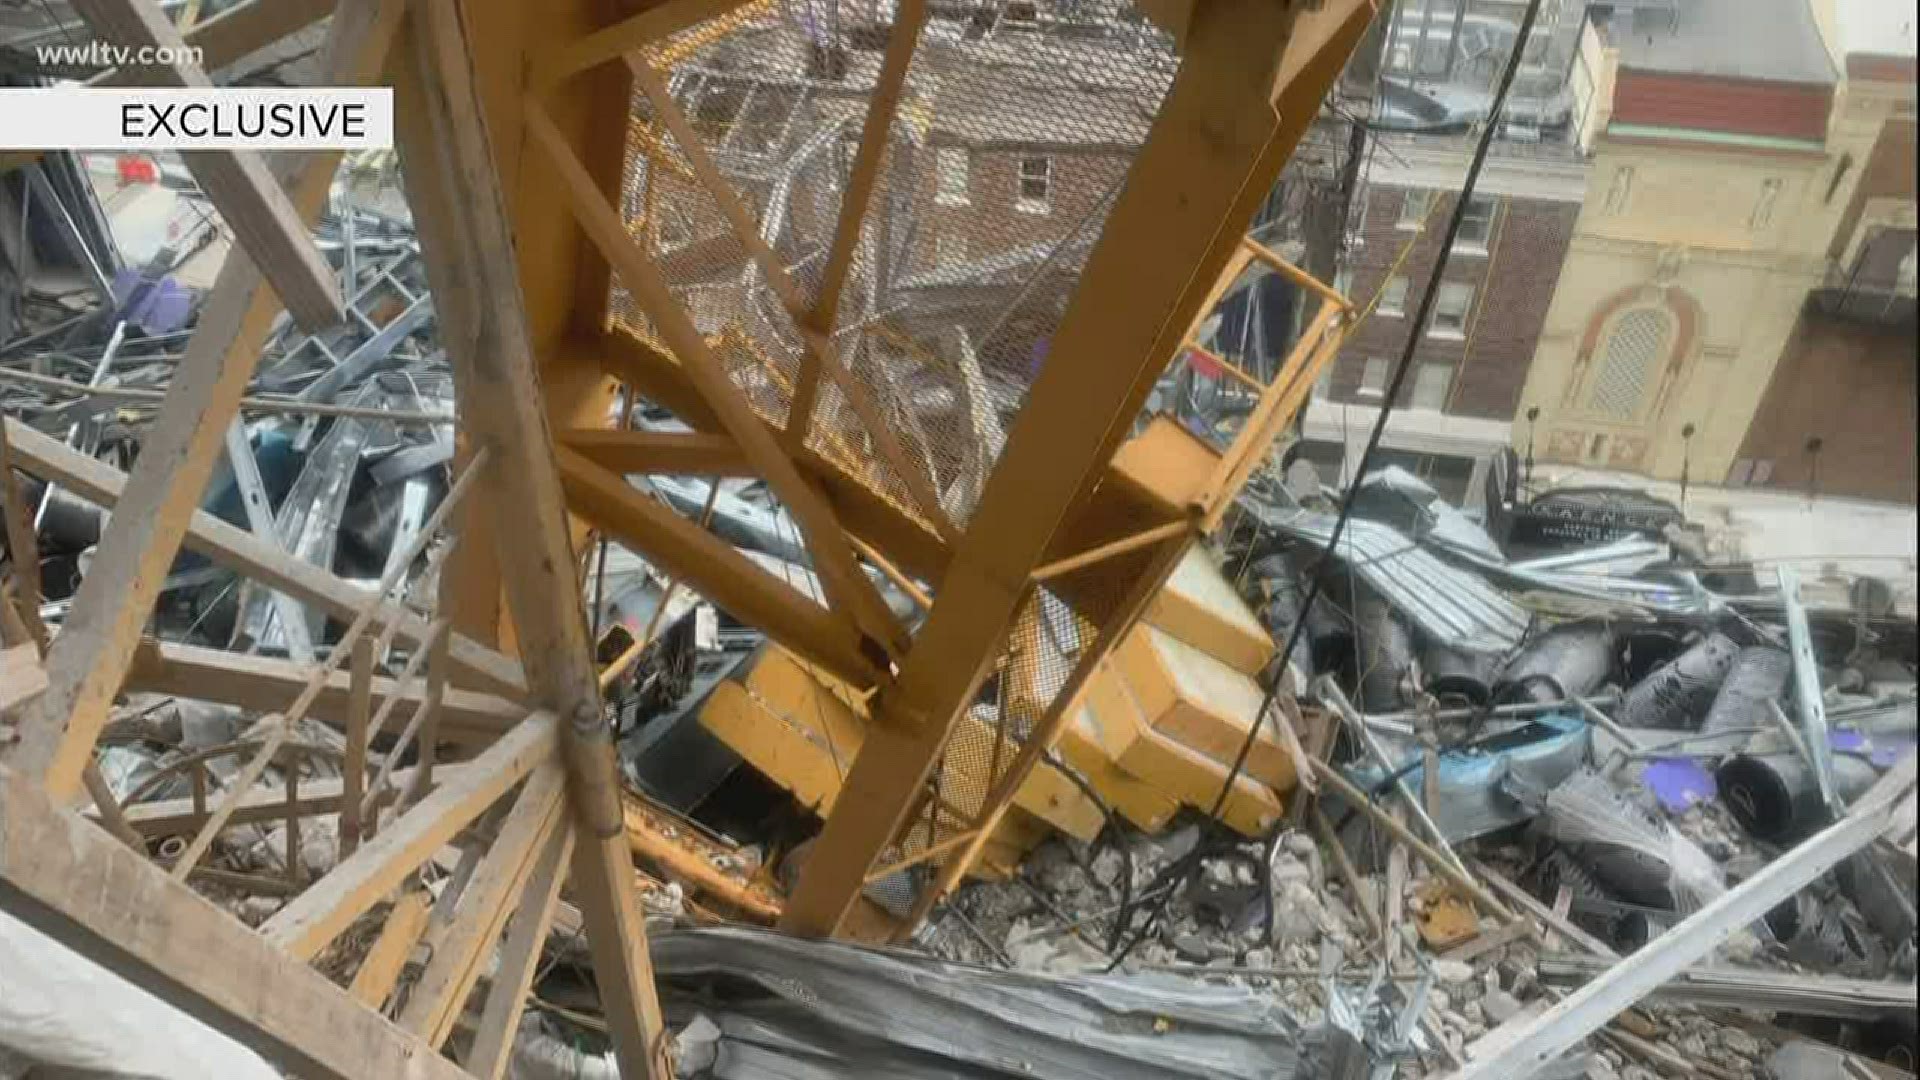 Hard Rock demolition battle gets uglier, with no forward progress